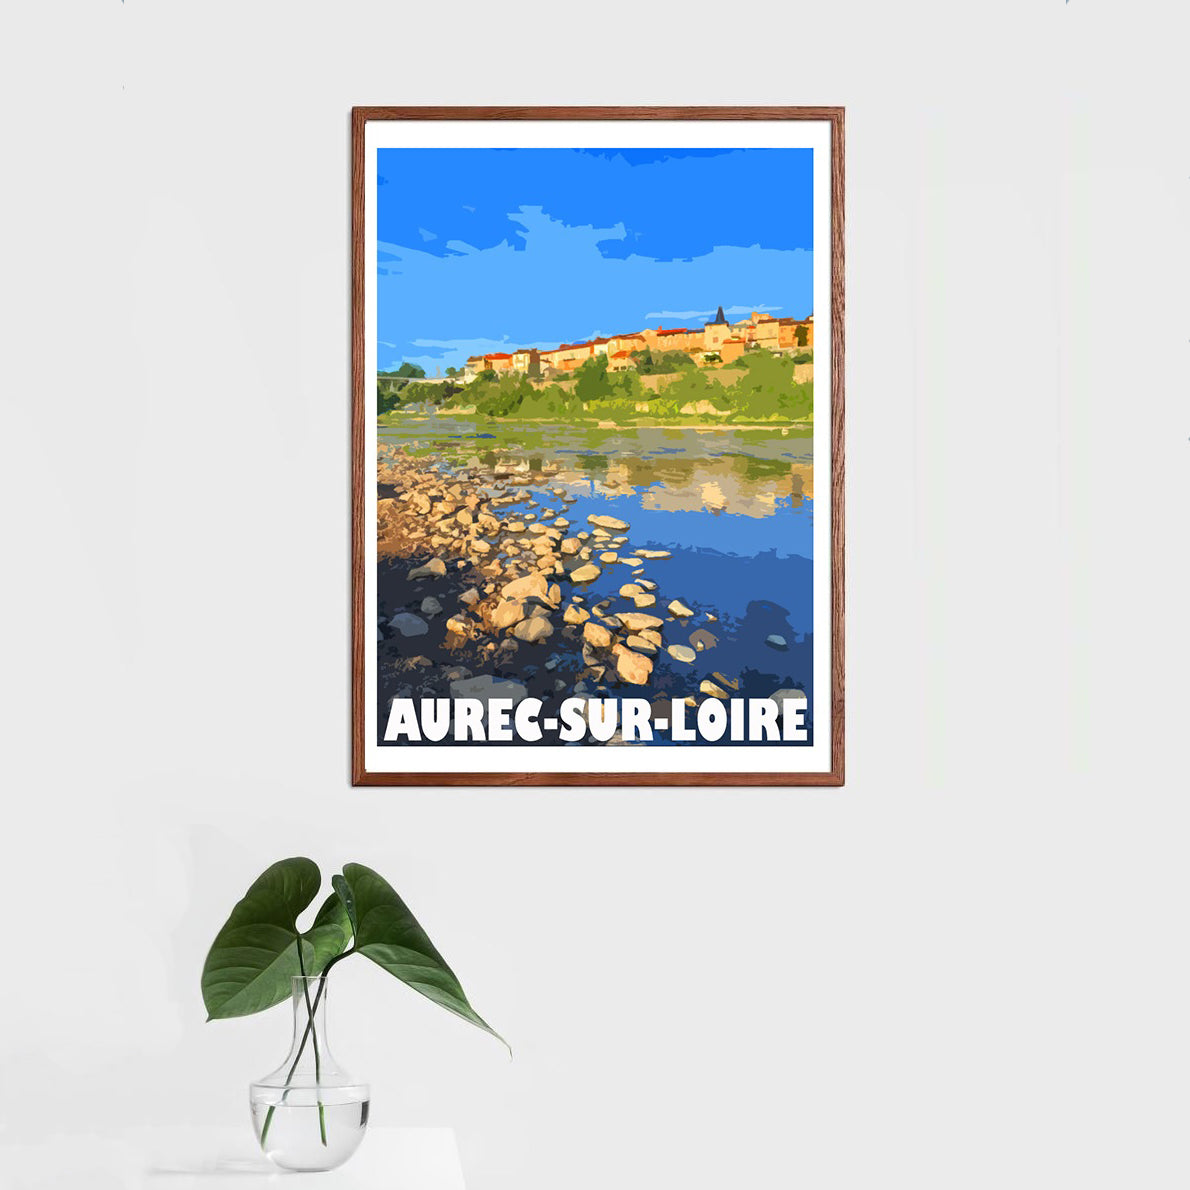 Aurec-sur-Loire